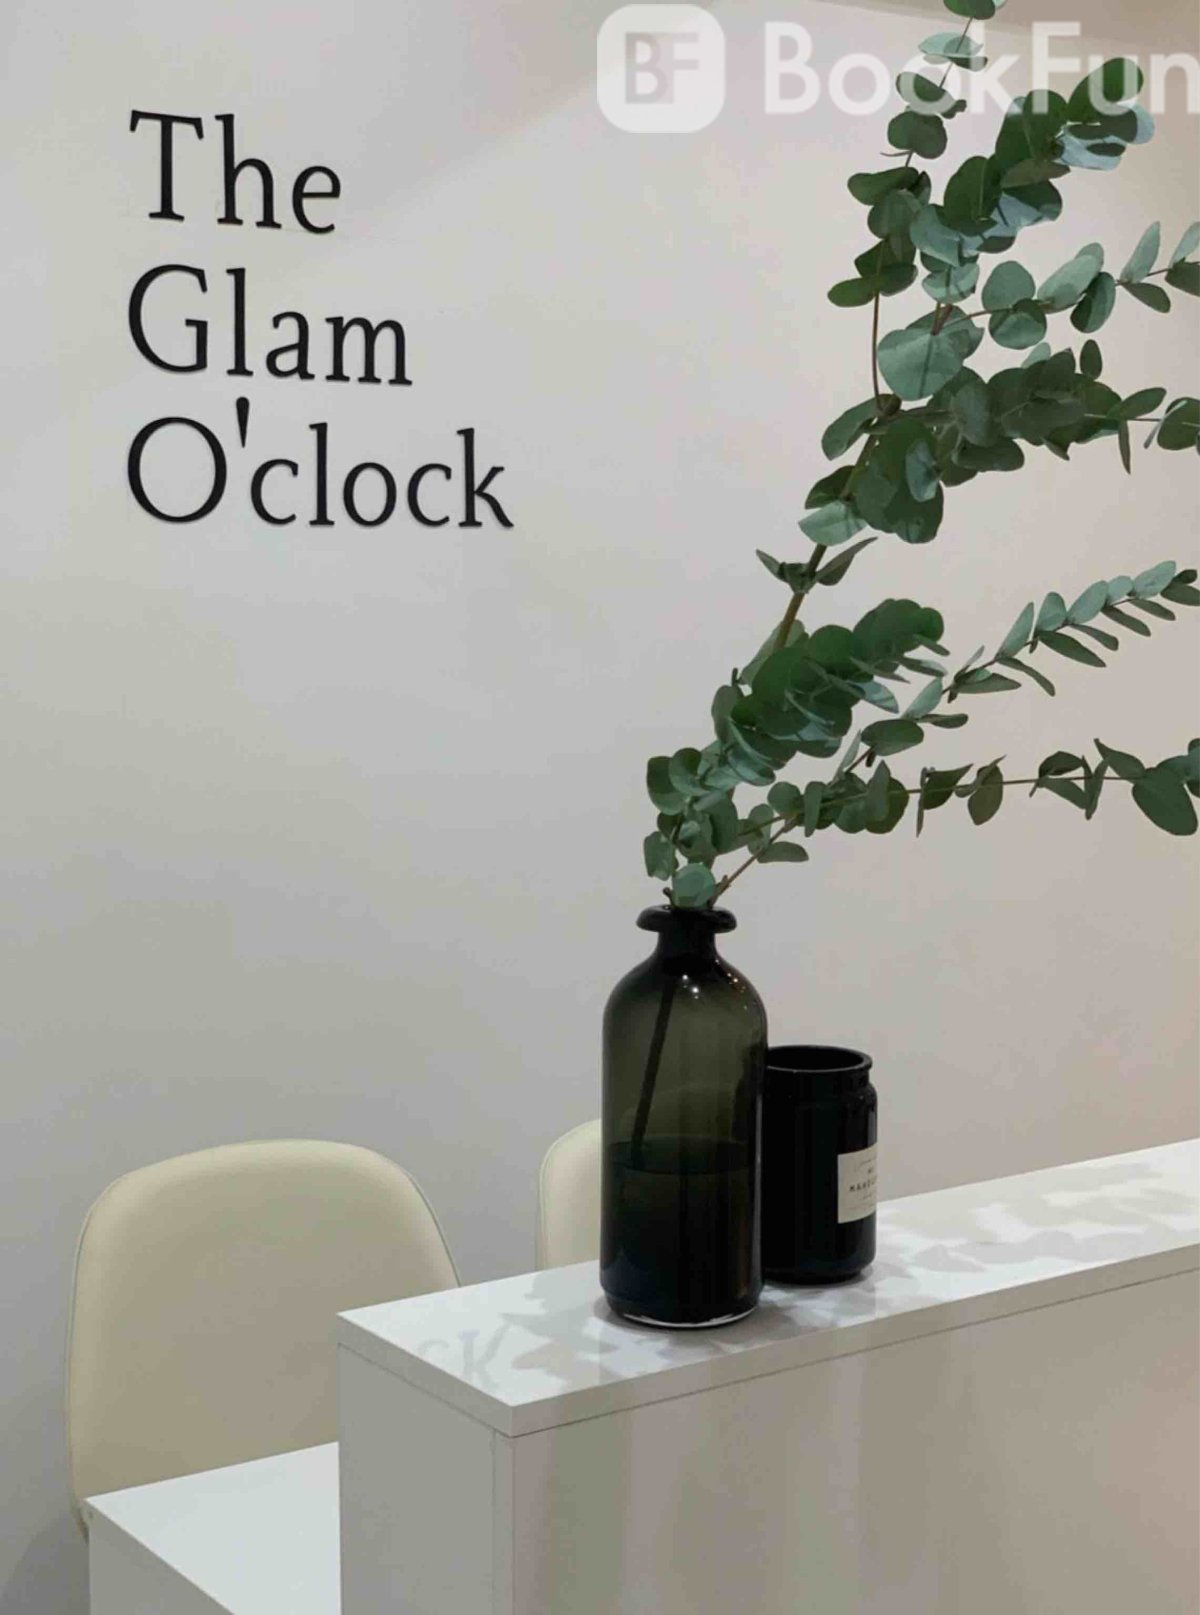 The Glam O’clock